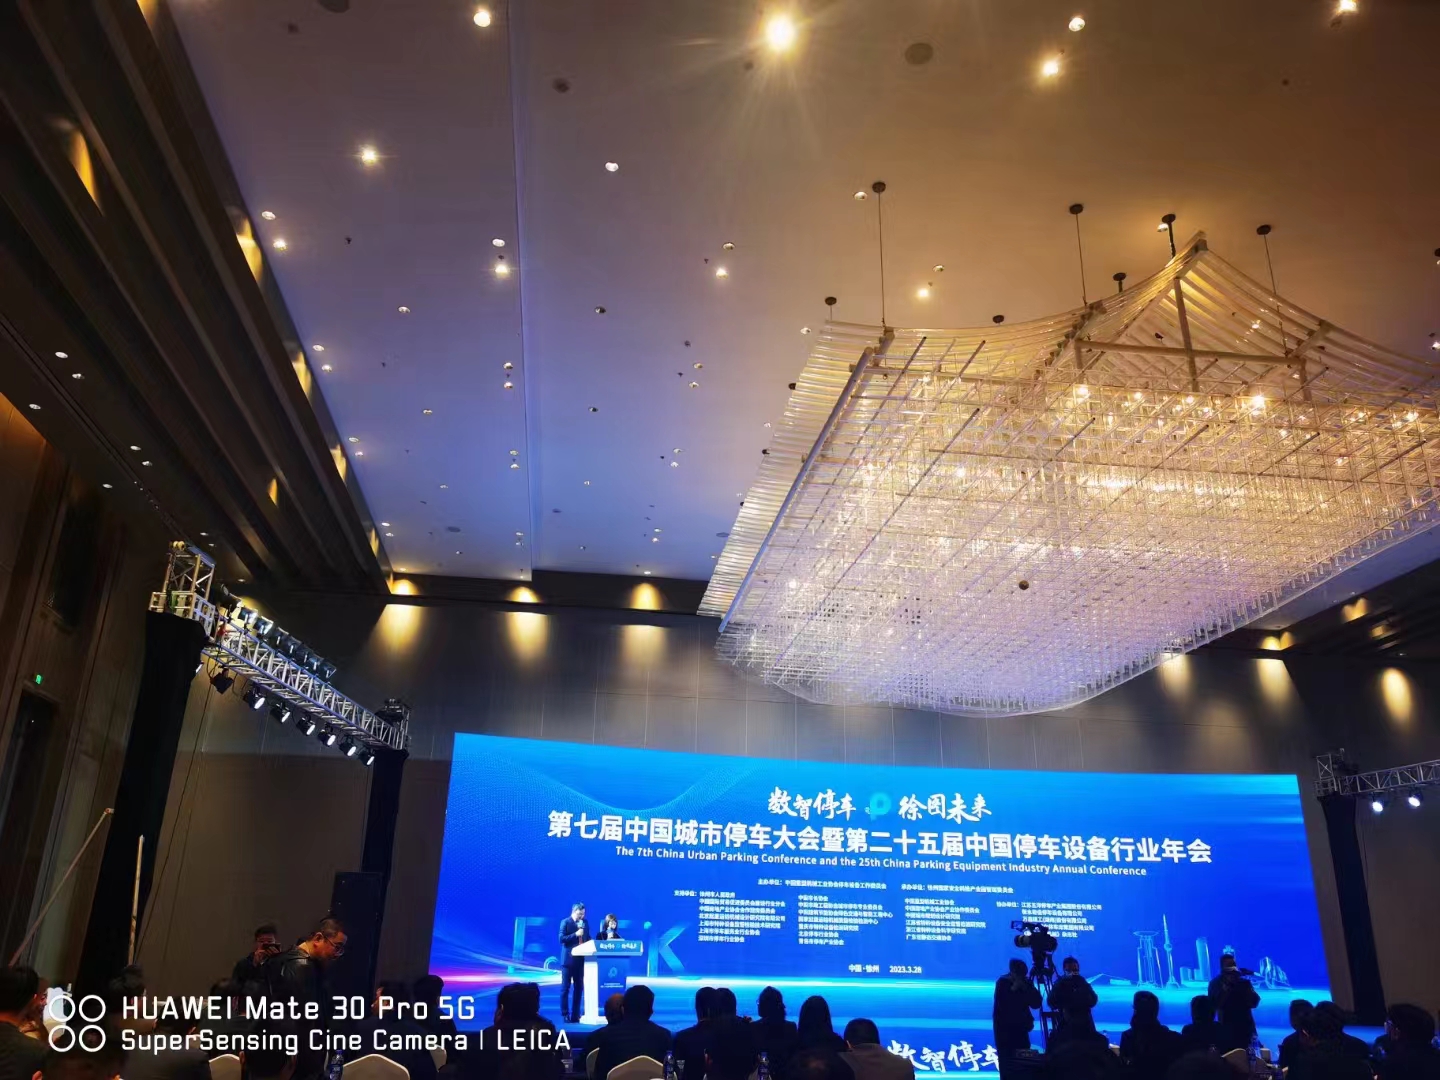 祝第七届中国城市停车大会暨第25届中国停车设备行业年会圆满召开